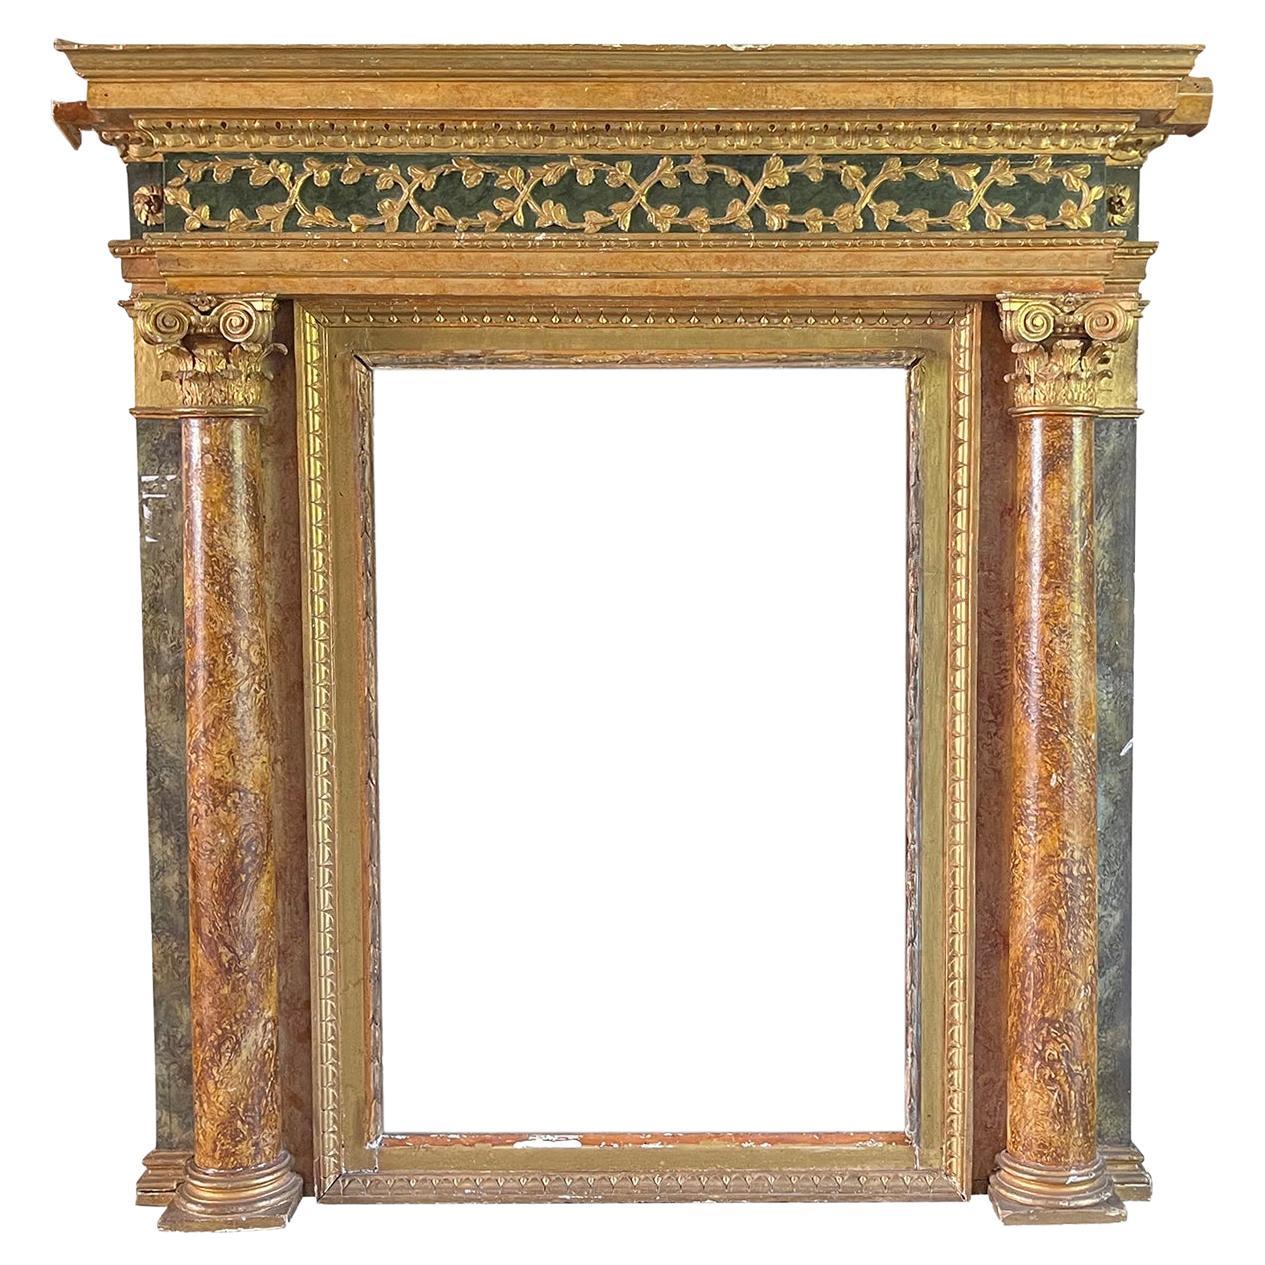 16th Century Italian Renaissance Fireplace Mantel Piece - Antique Surround For Sale